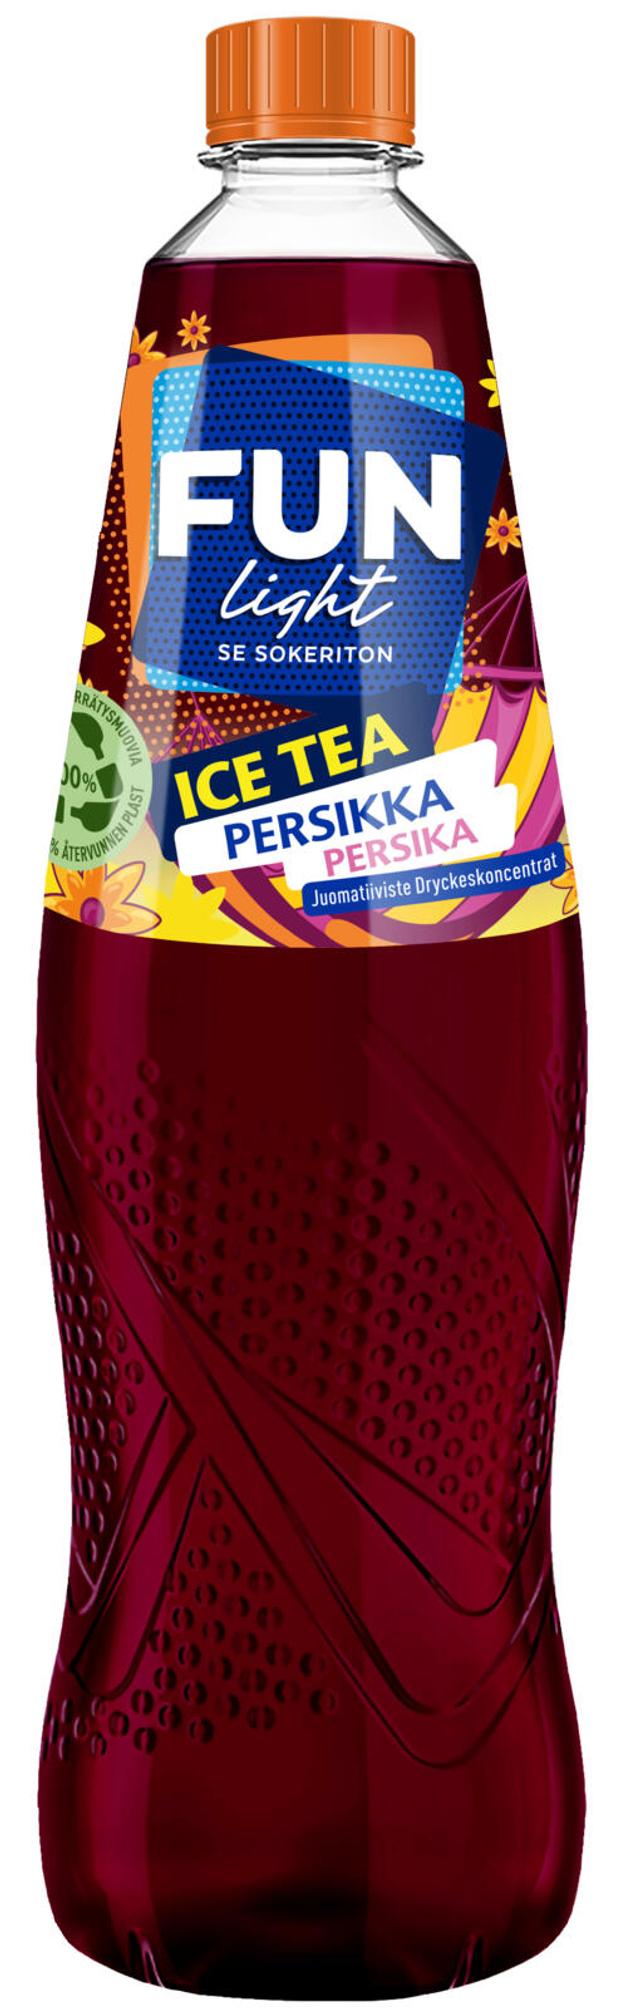 FUN Light Ice Tea persikka jääteen makuinen juomatiiviste 0,5l